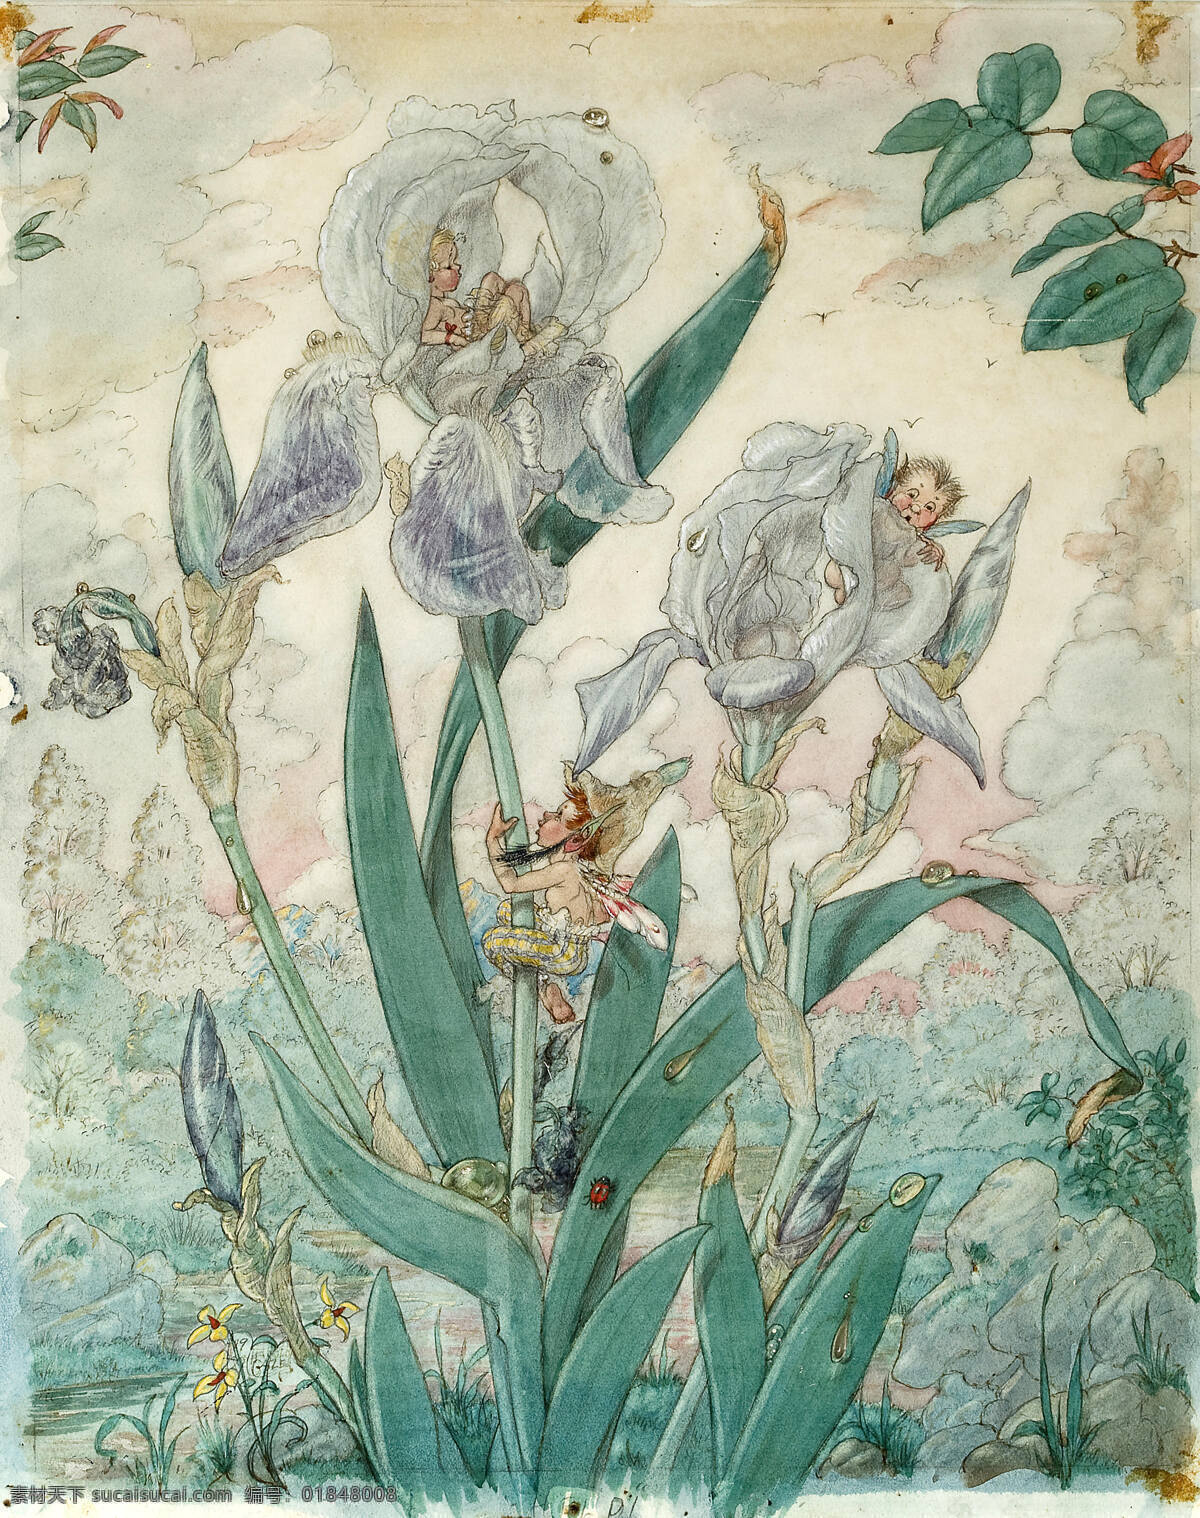 童话故事 白色鸢尾花 树林中 小精灵 飞来飞去 世纪 水彩画 文化艺术 绘画书法